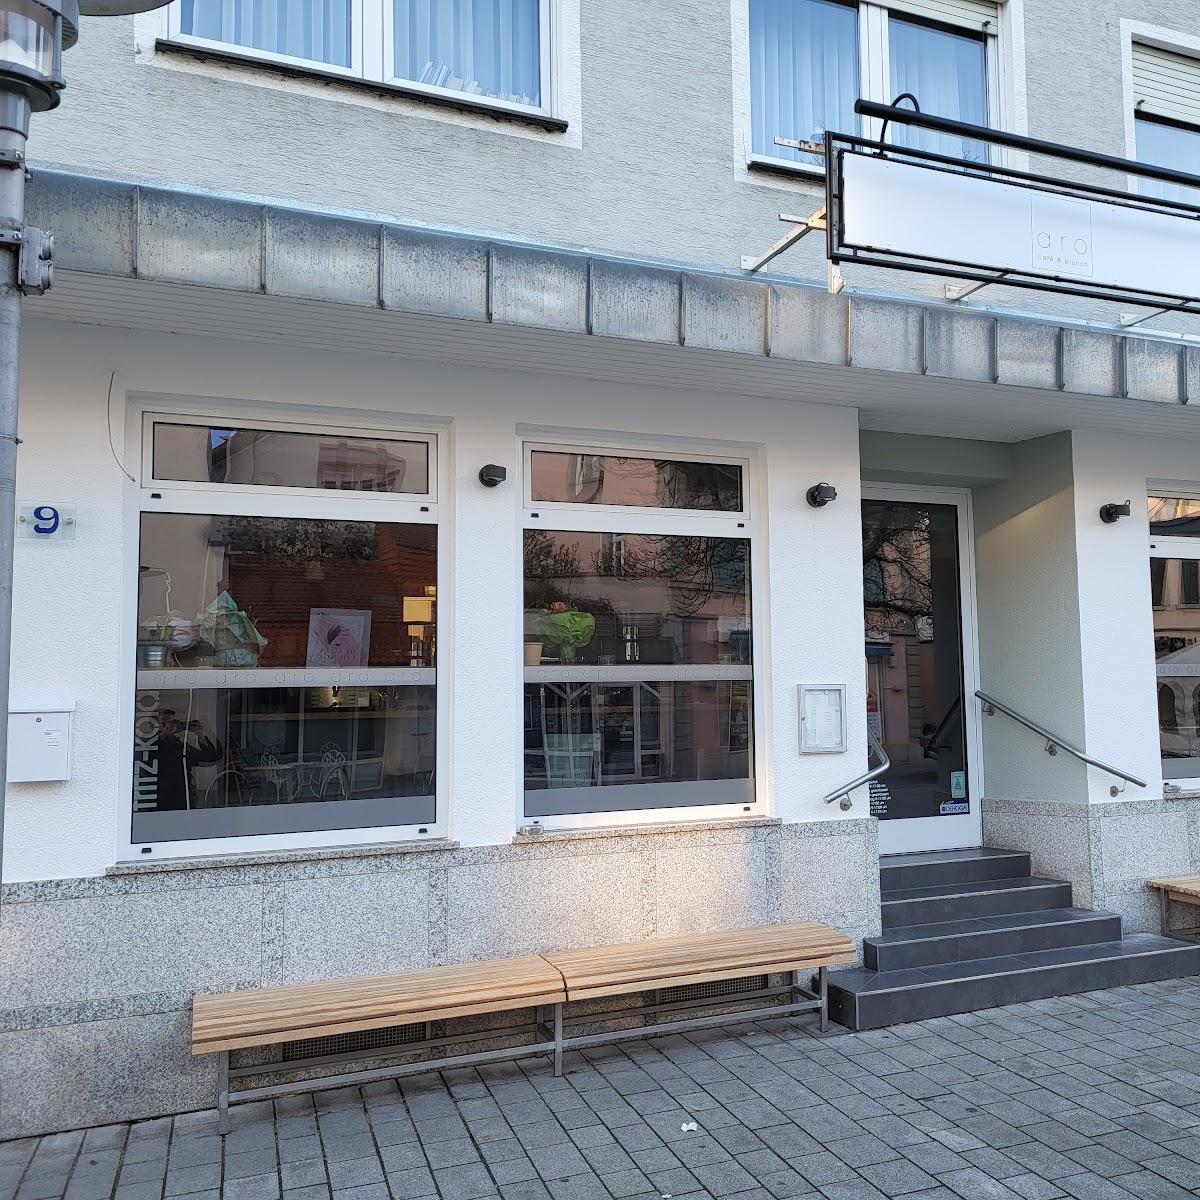 Restaurant "aro - cafe & brunch" in Walldorf